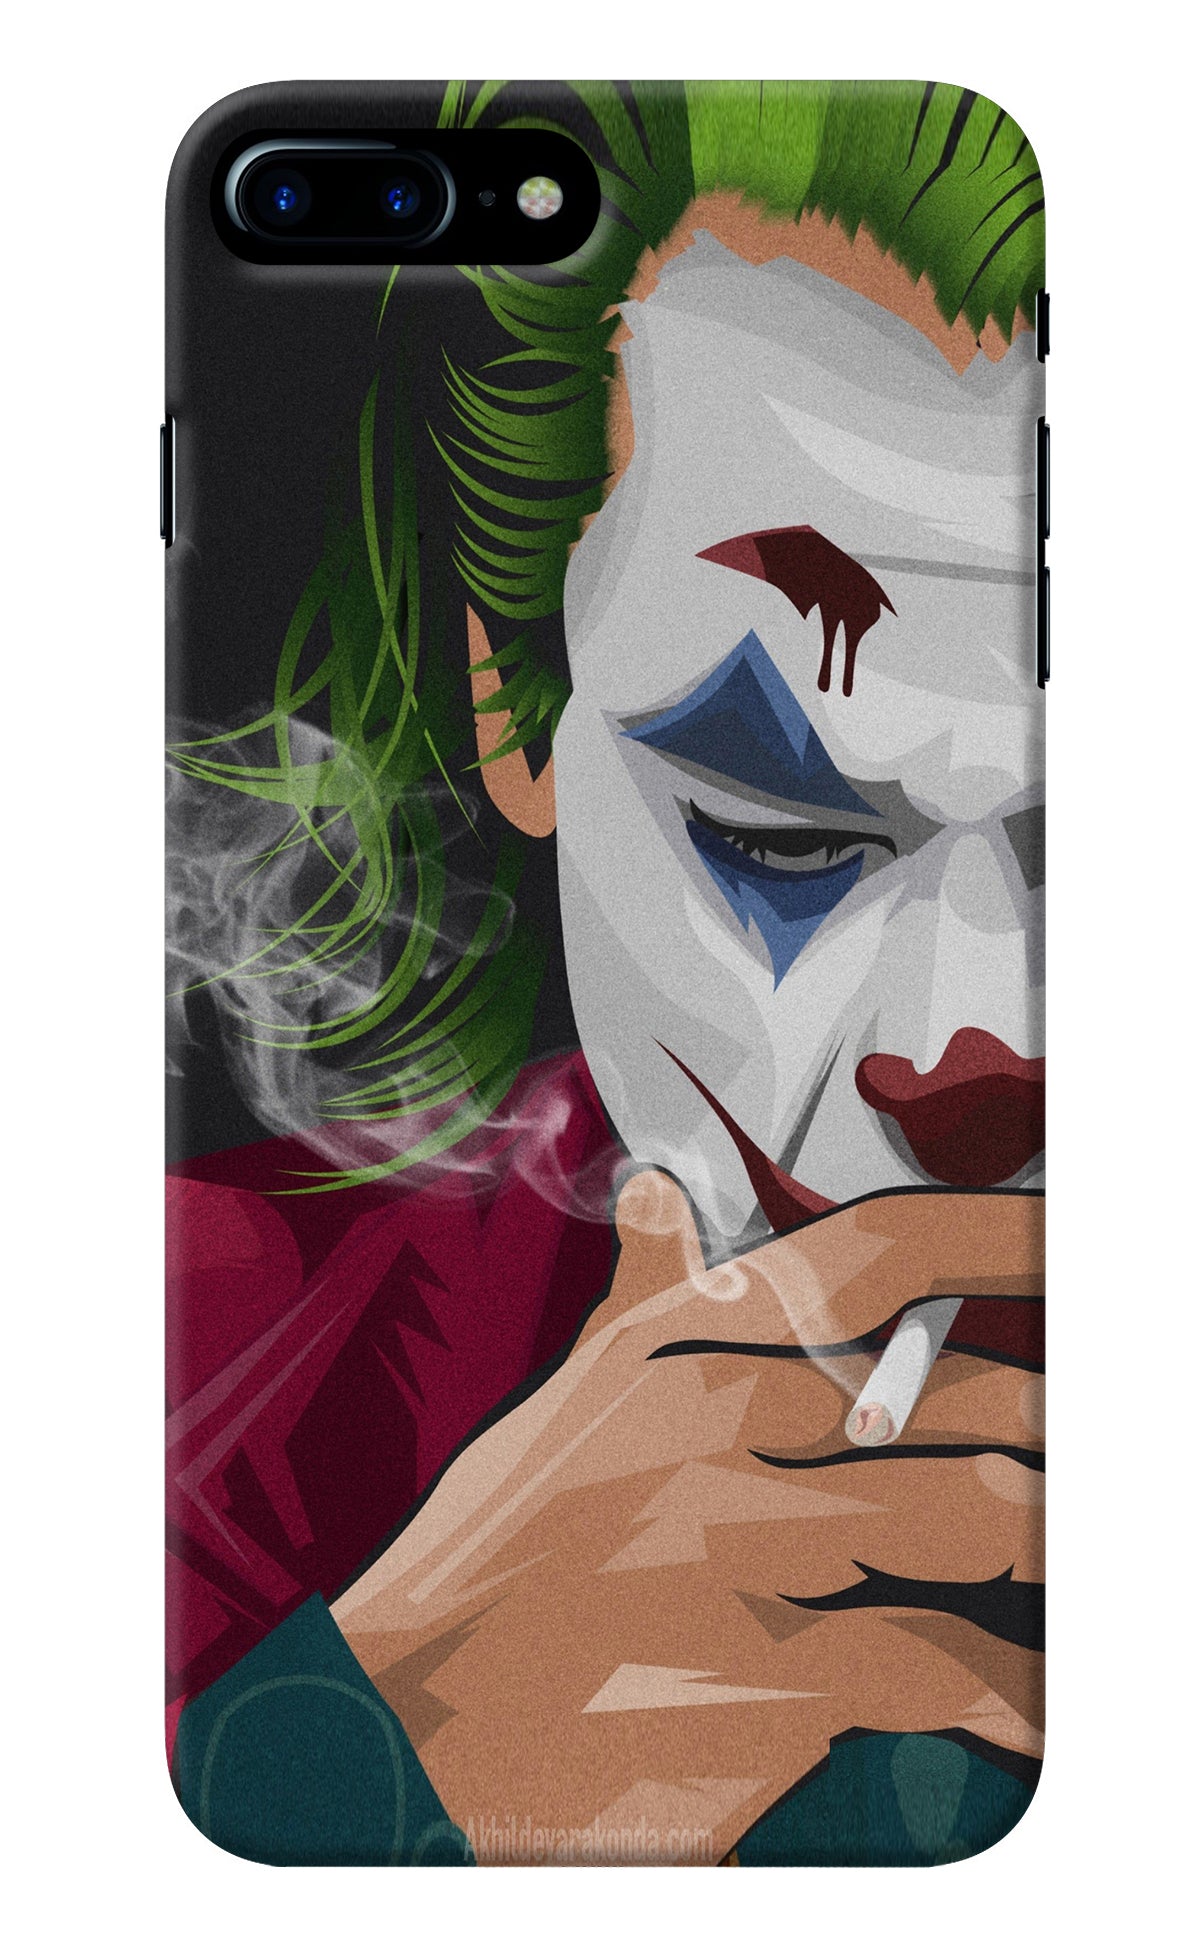 Joker Smoking iPhone 7 Plus Back Cover